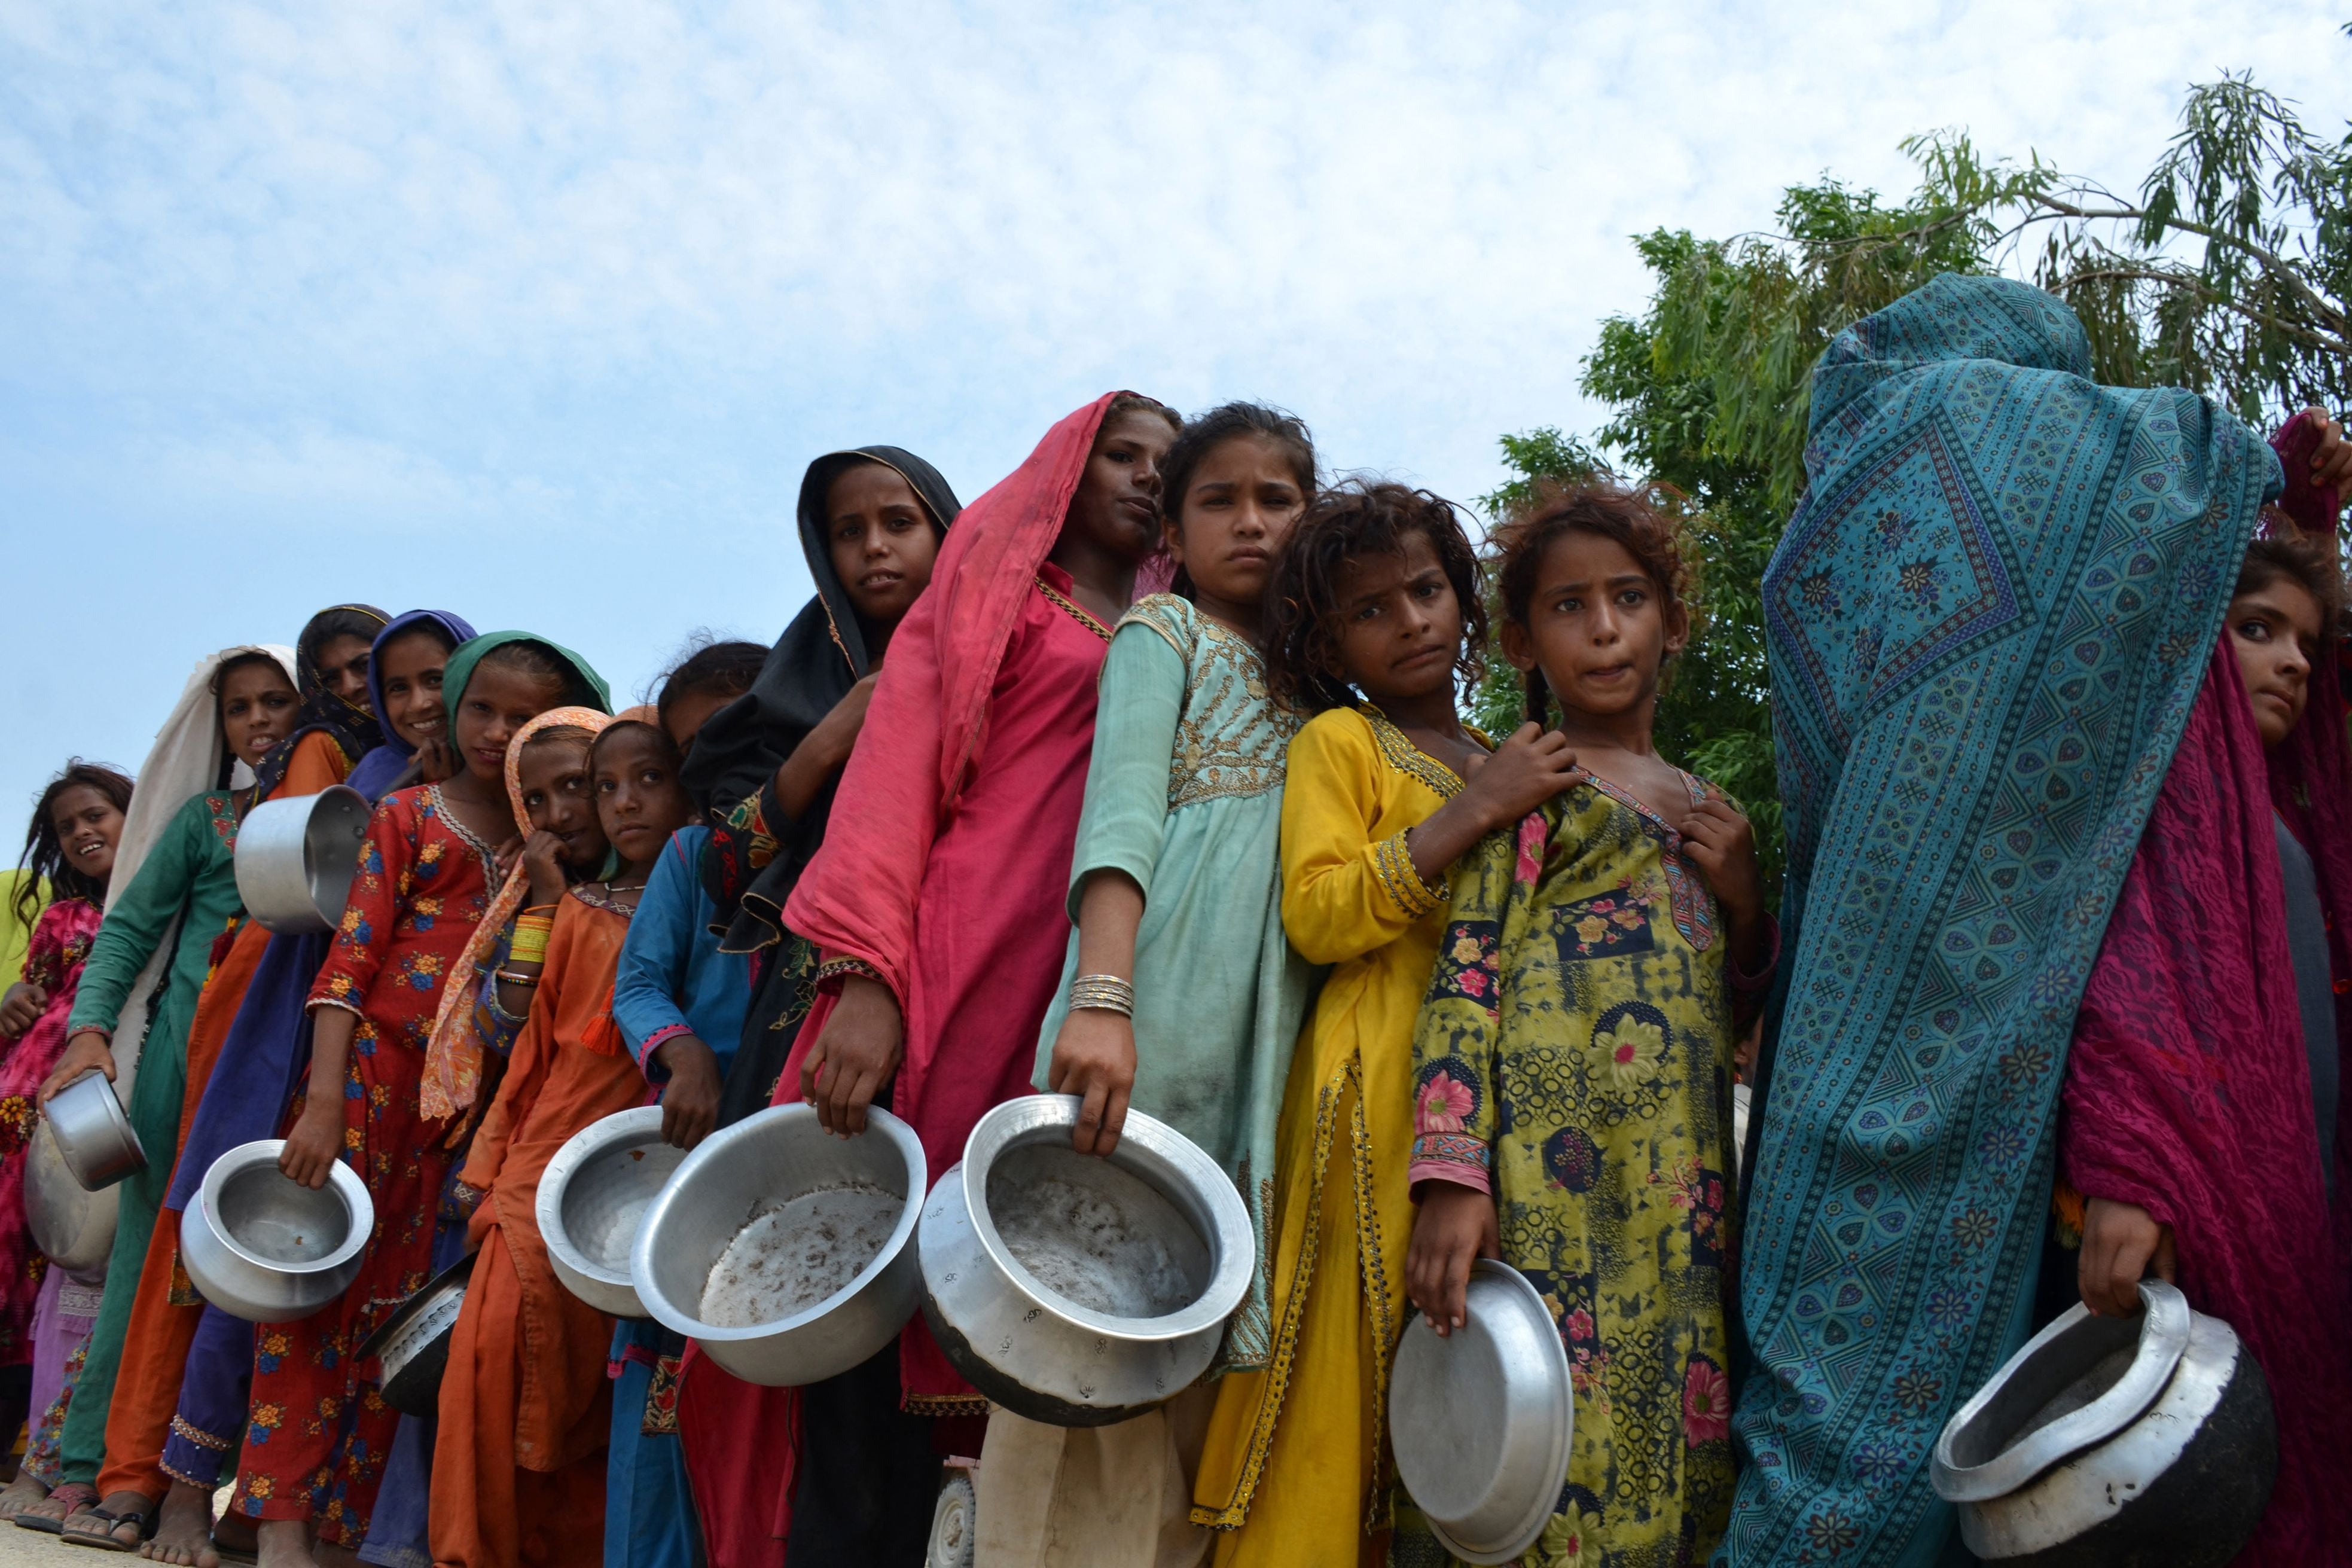 Las personas desplazadas afectadas por las inundaciones hacen cola para recibir los alimentos que distribuye Saylani Welfare Trust en un campamento improvisado en Sehwan, provincia de Sindh, Pakistán, el 13 de septiembre de 2022. (Foto de Husnain ALI / AFP)